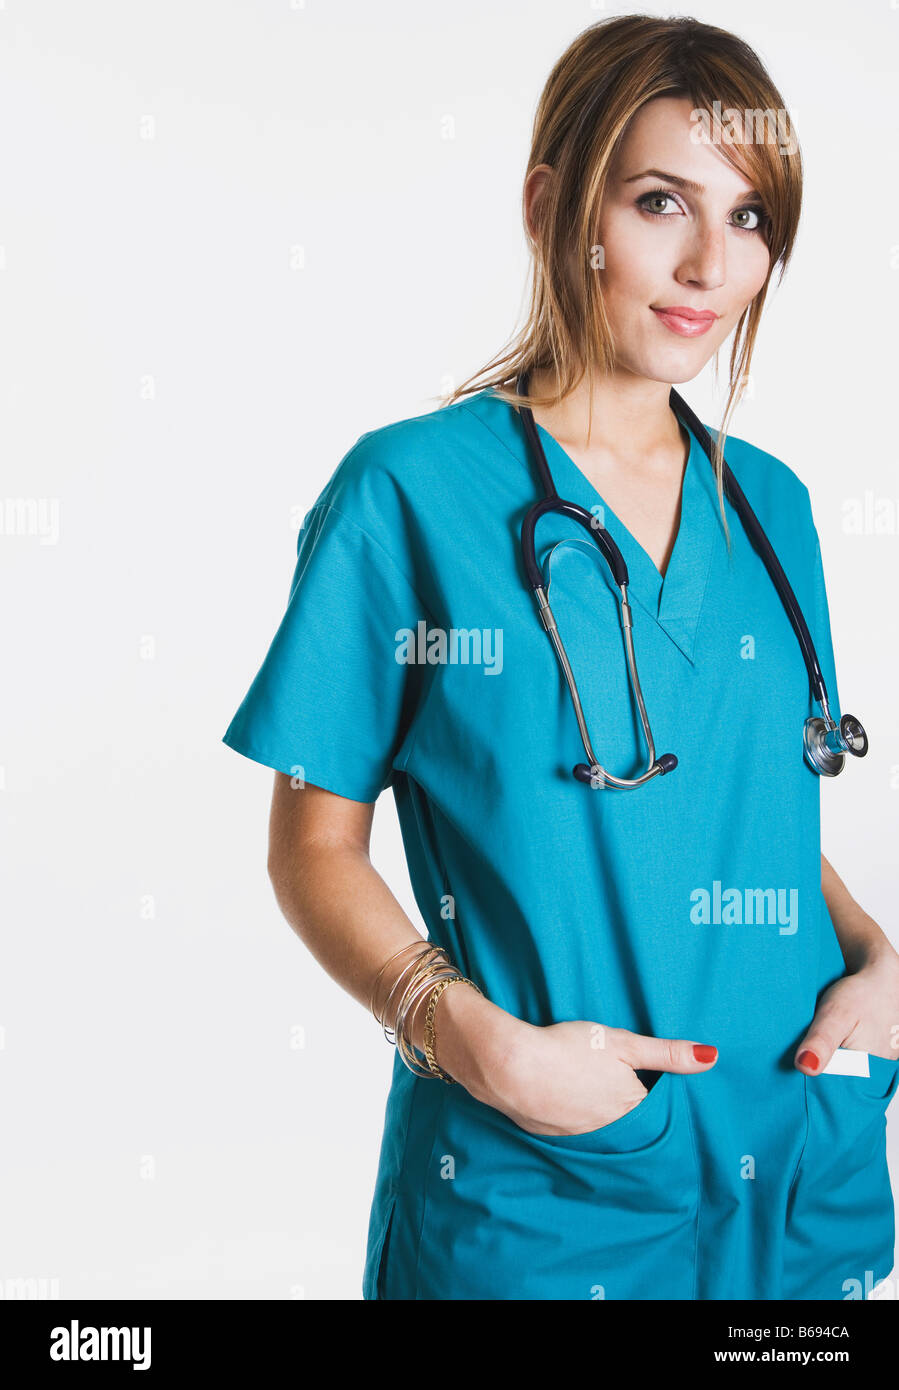 Nurse wearing scrubs, portrait Banque D'Images